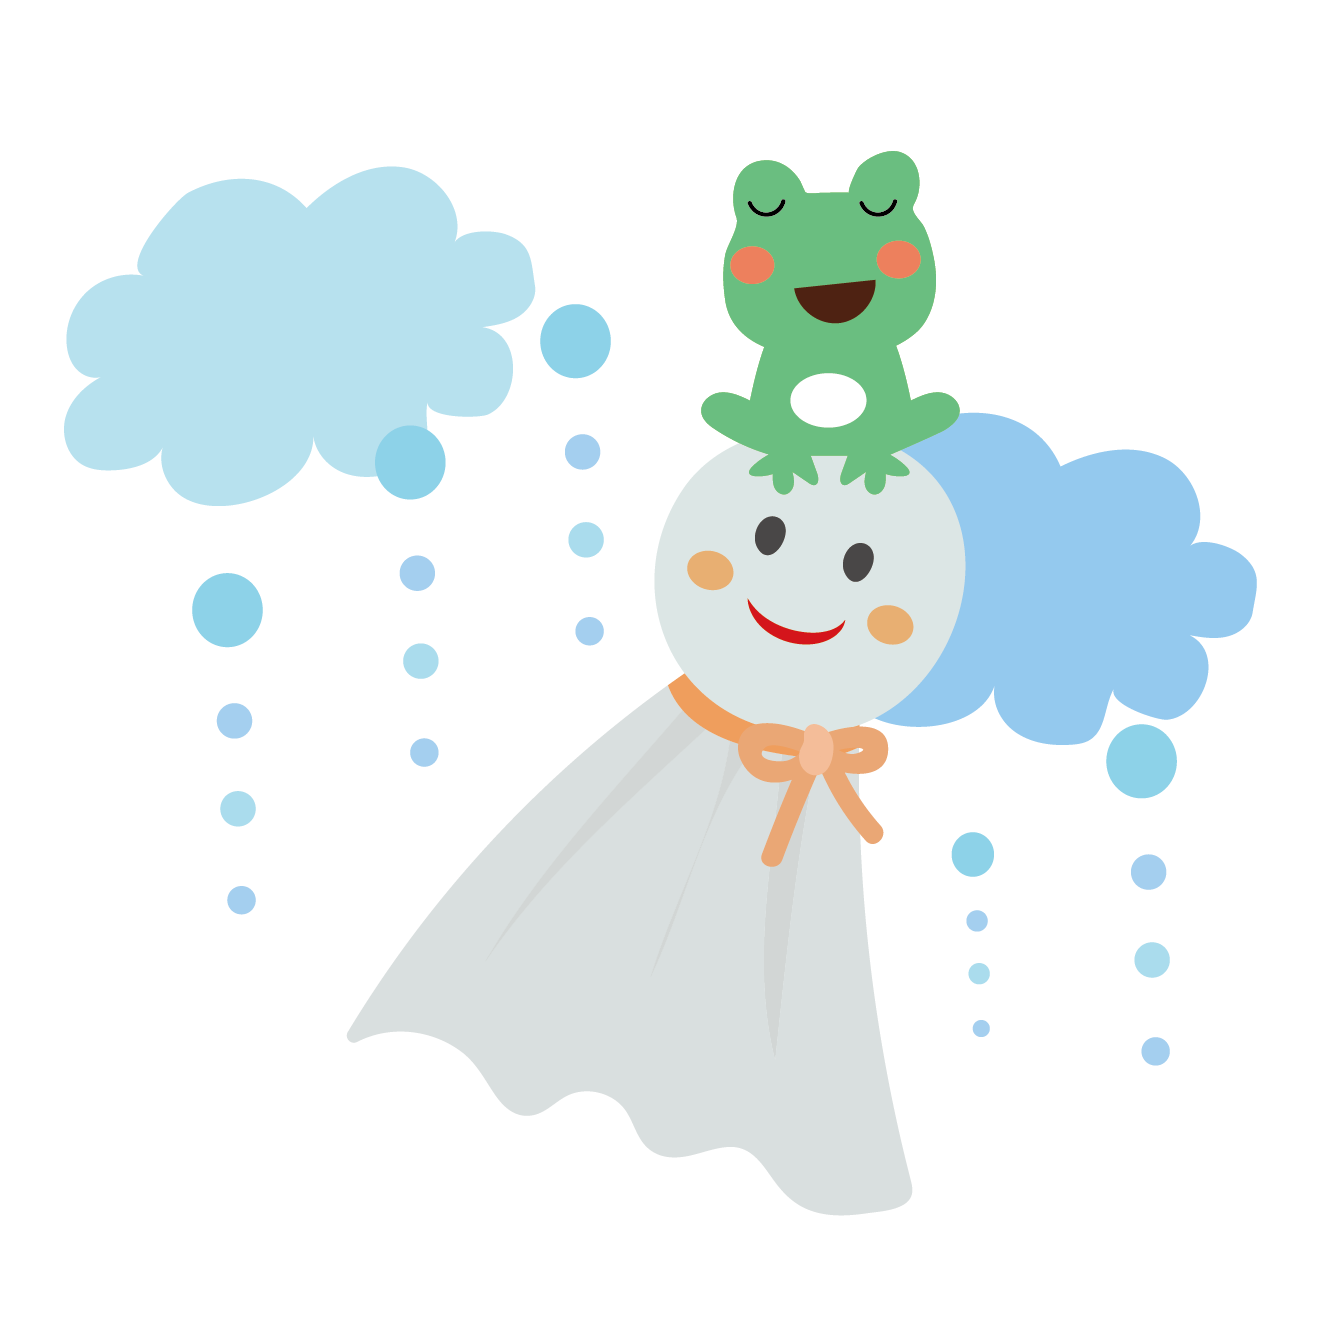 カエル 蛙 とてるてる坊主のイラスト 梅雨 商用フリー 無料 のイラスト素材なら イラストマンション